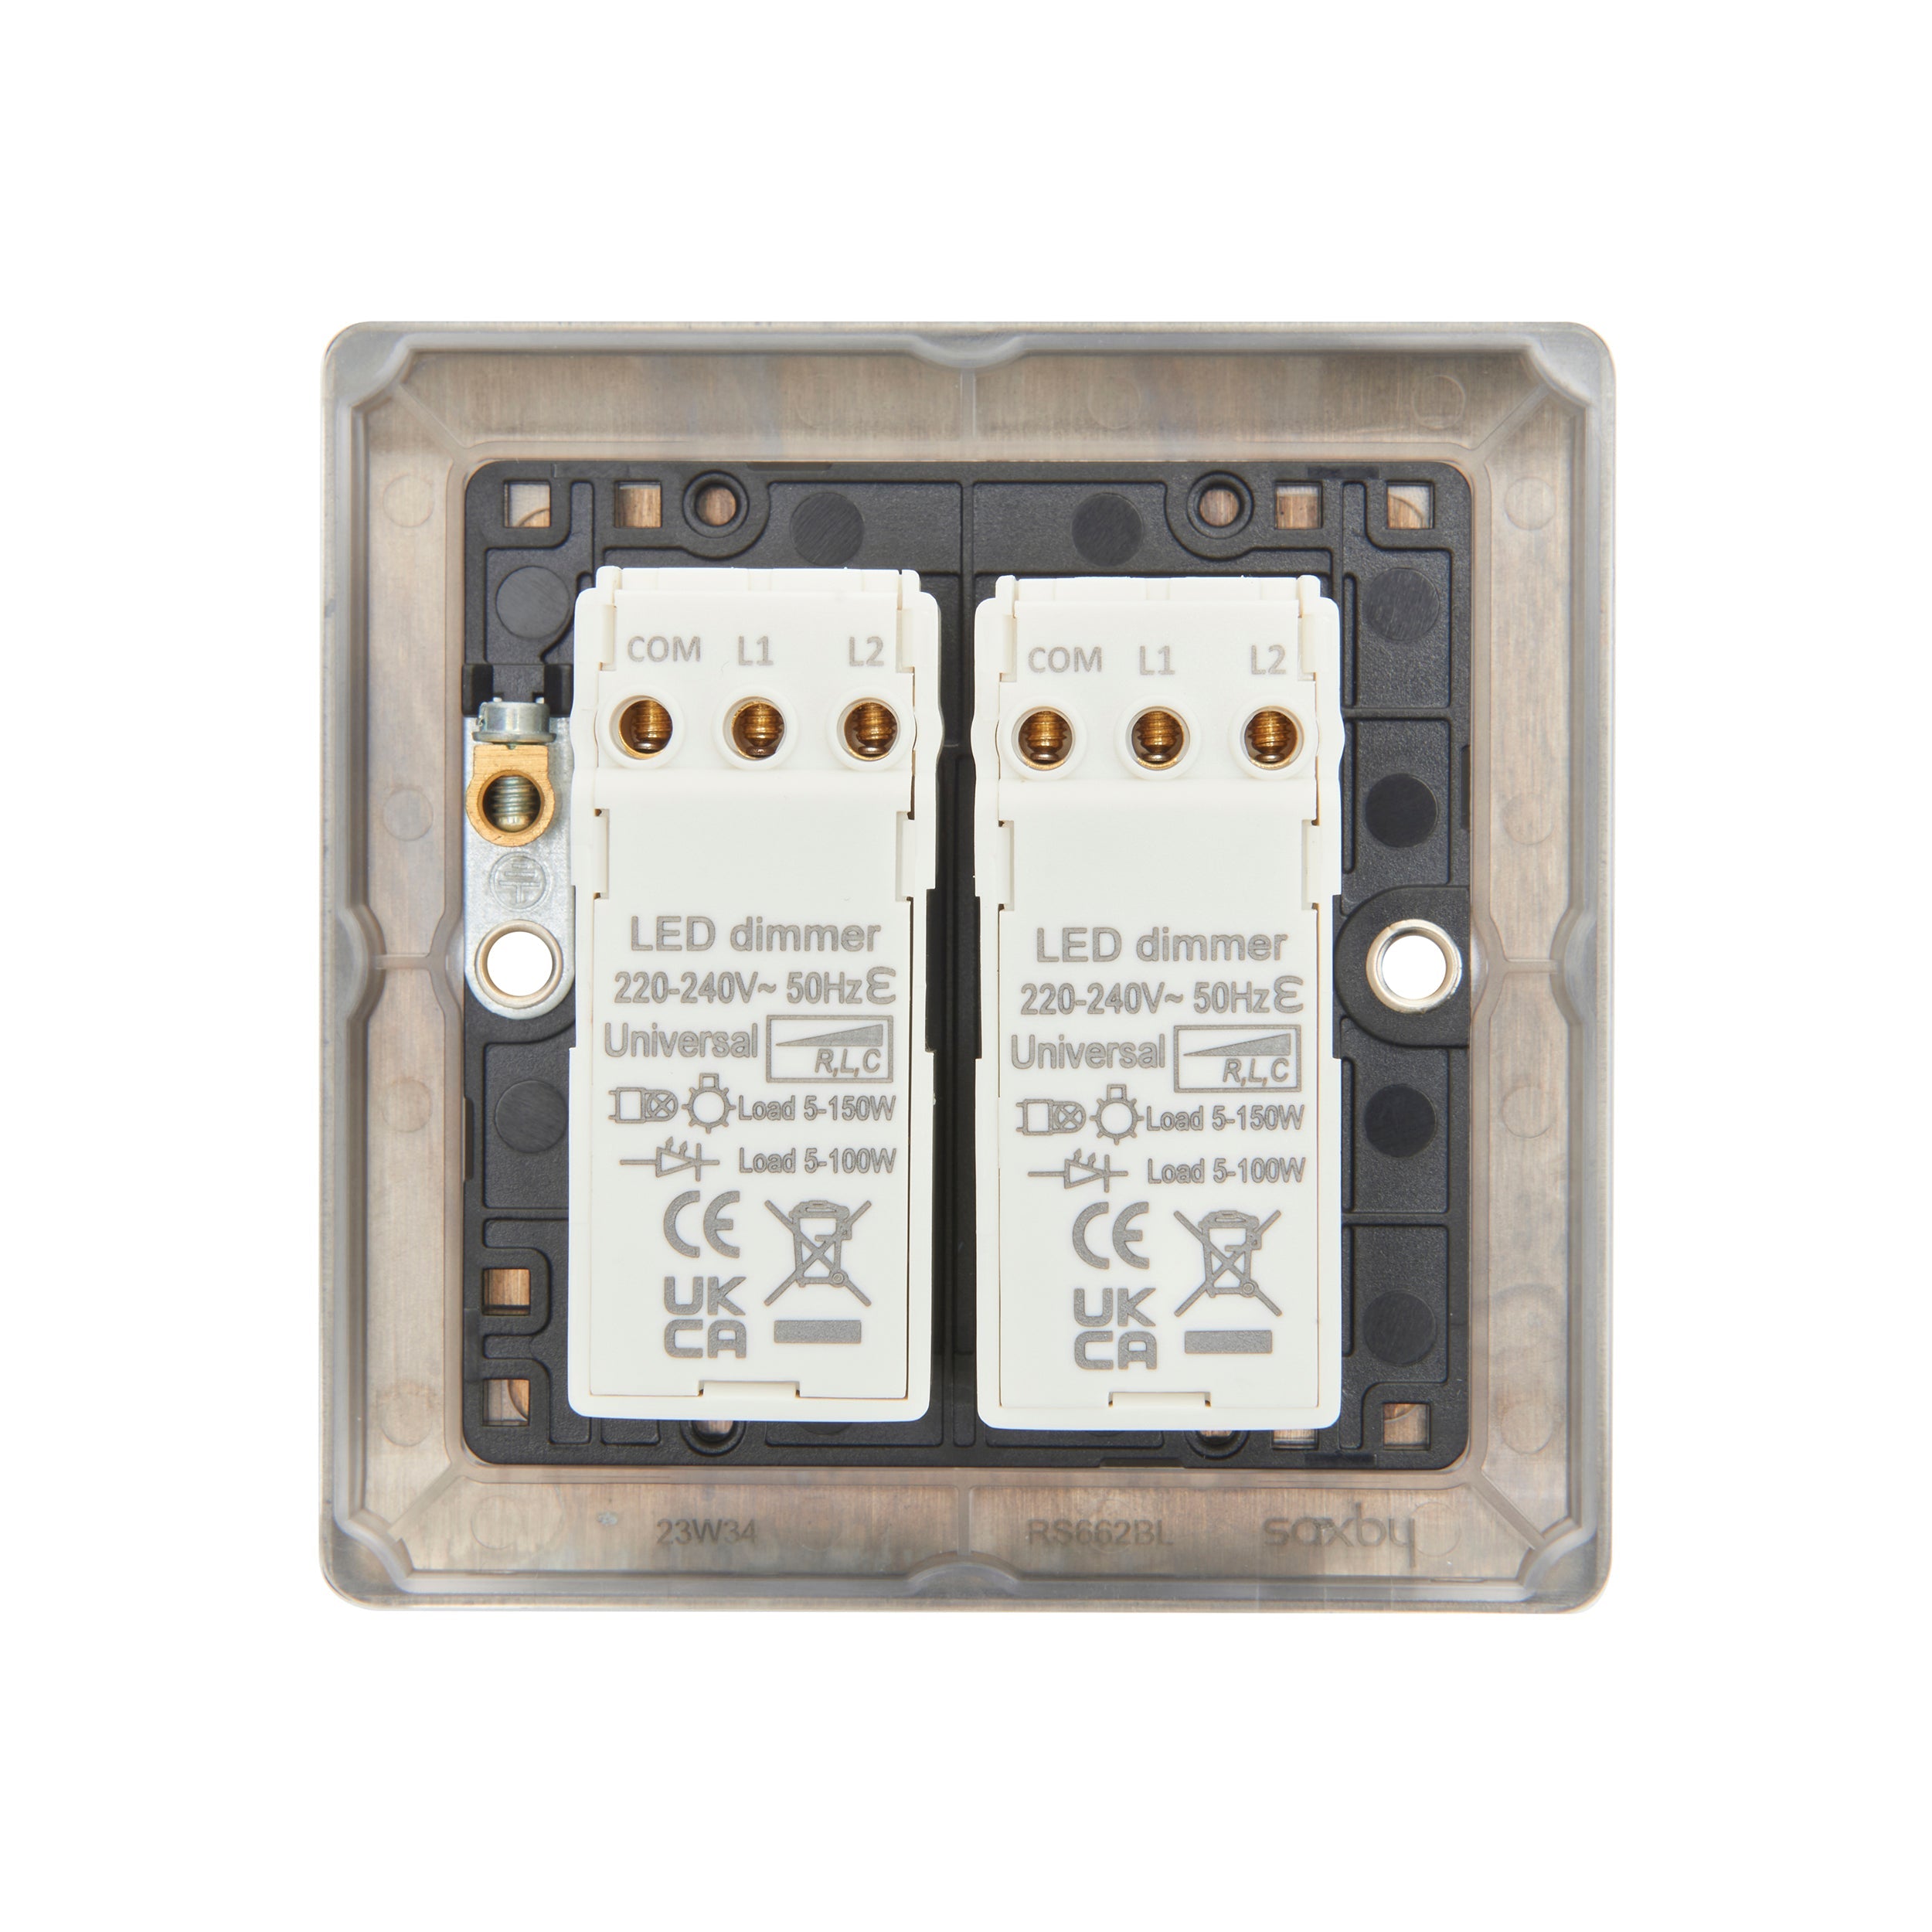 Saxby Raised Screwed 2G LED Dimmer 5-100W - Matt Black RS662BL